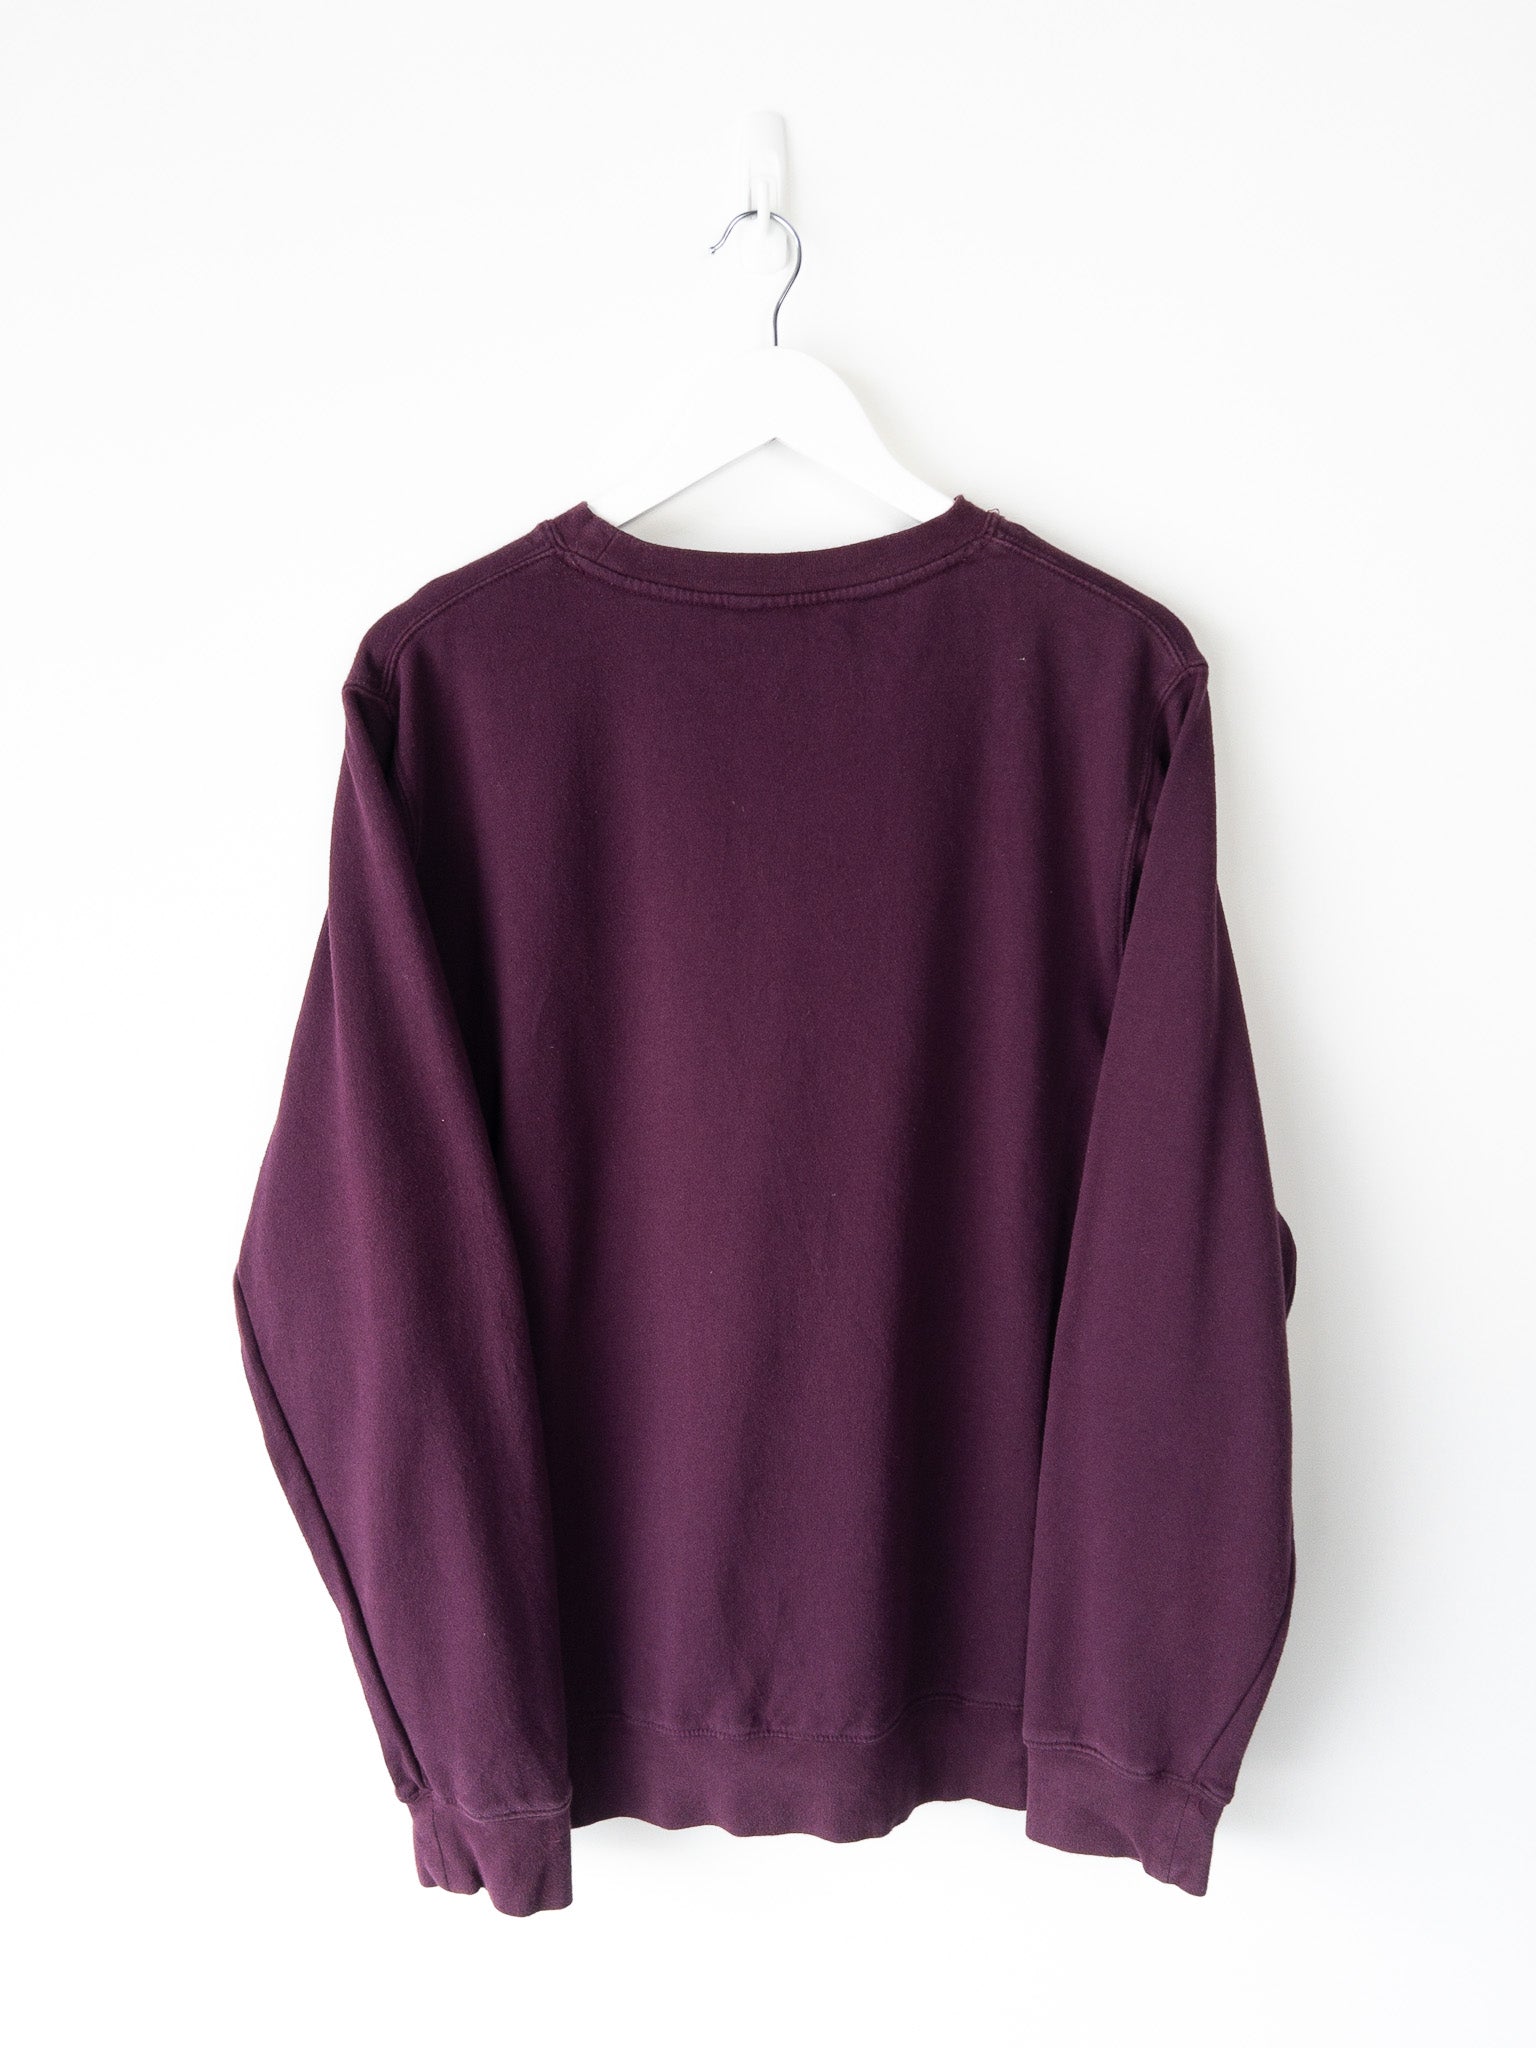 Vintage Stussy Sweatshirt (L)